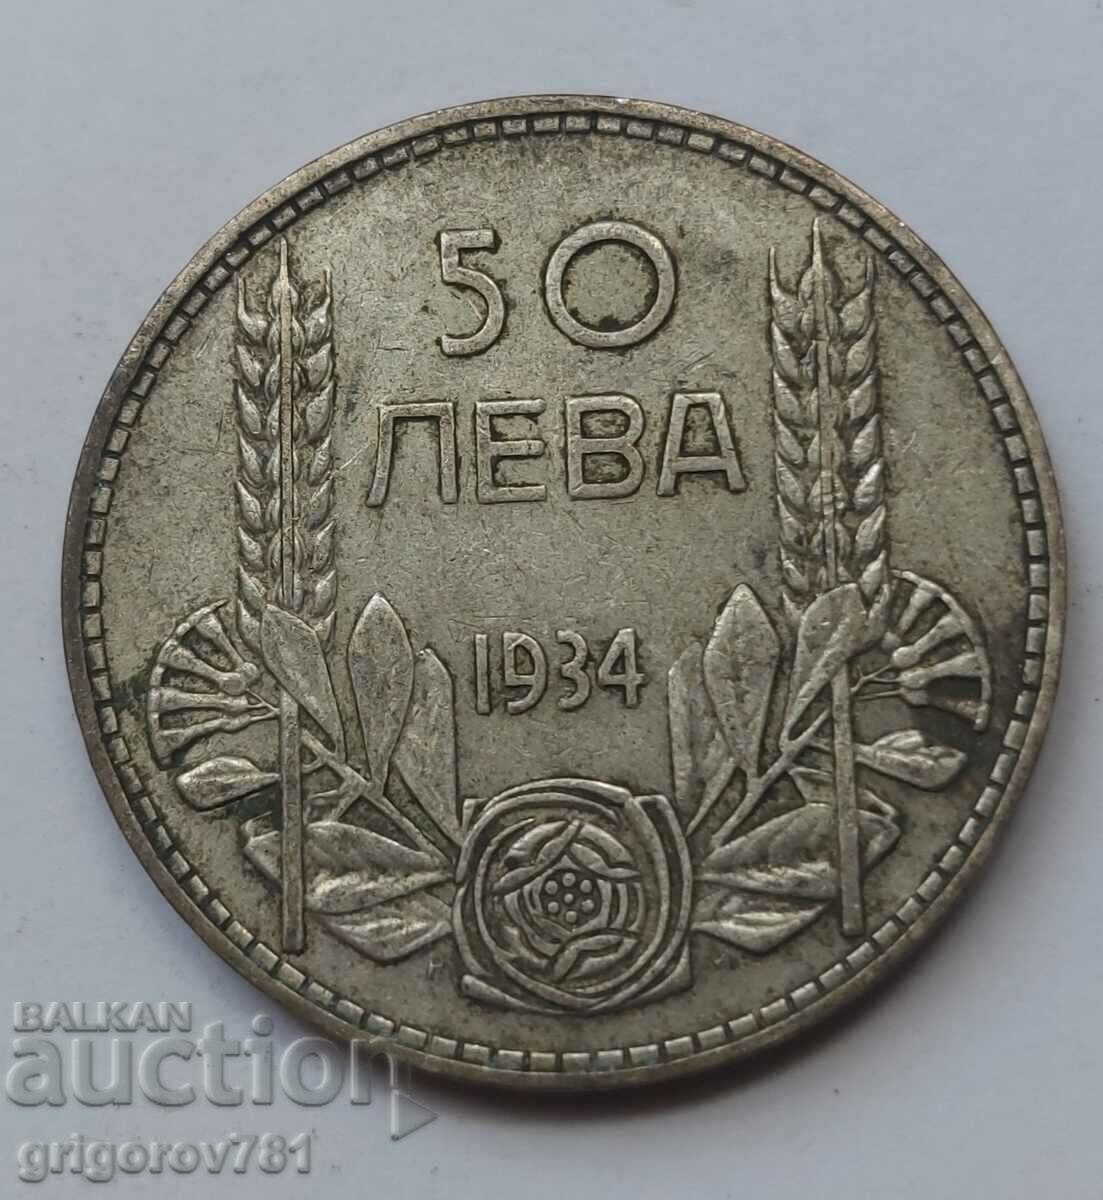 Ασήμι 50 λέβα Βουλγαρία 1934 - ασημένιο νόμισμα #7